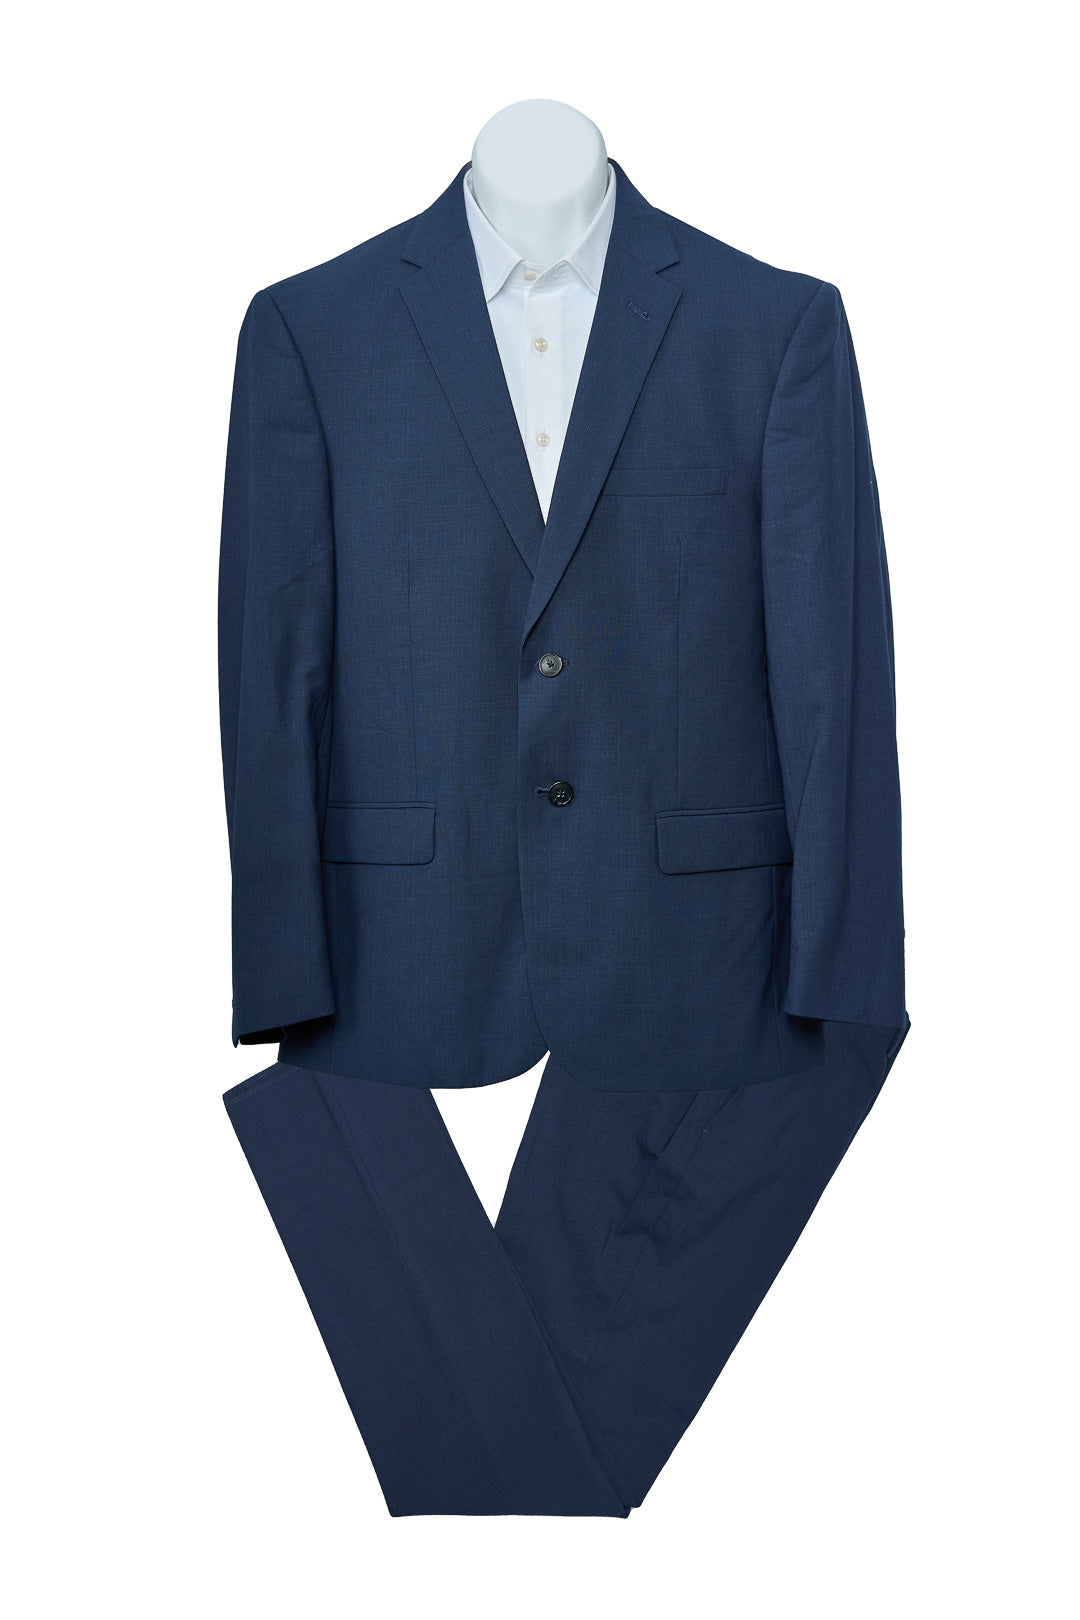 Plain Blue Wool Suit